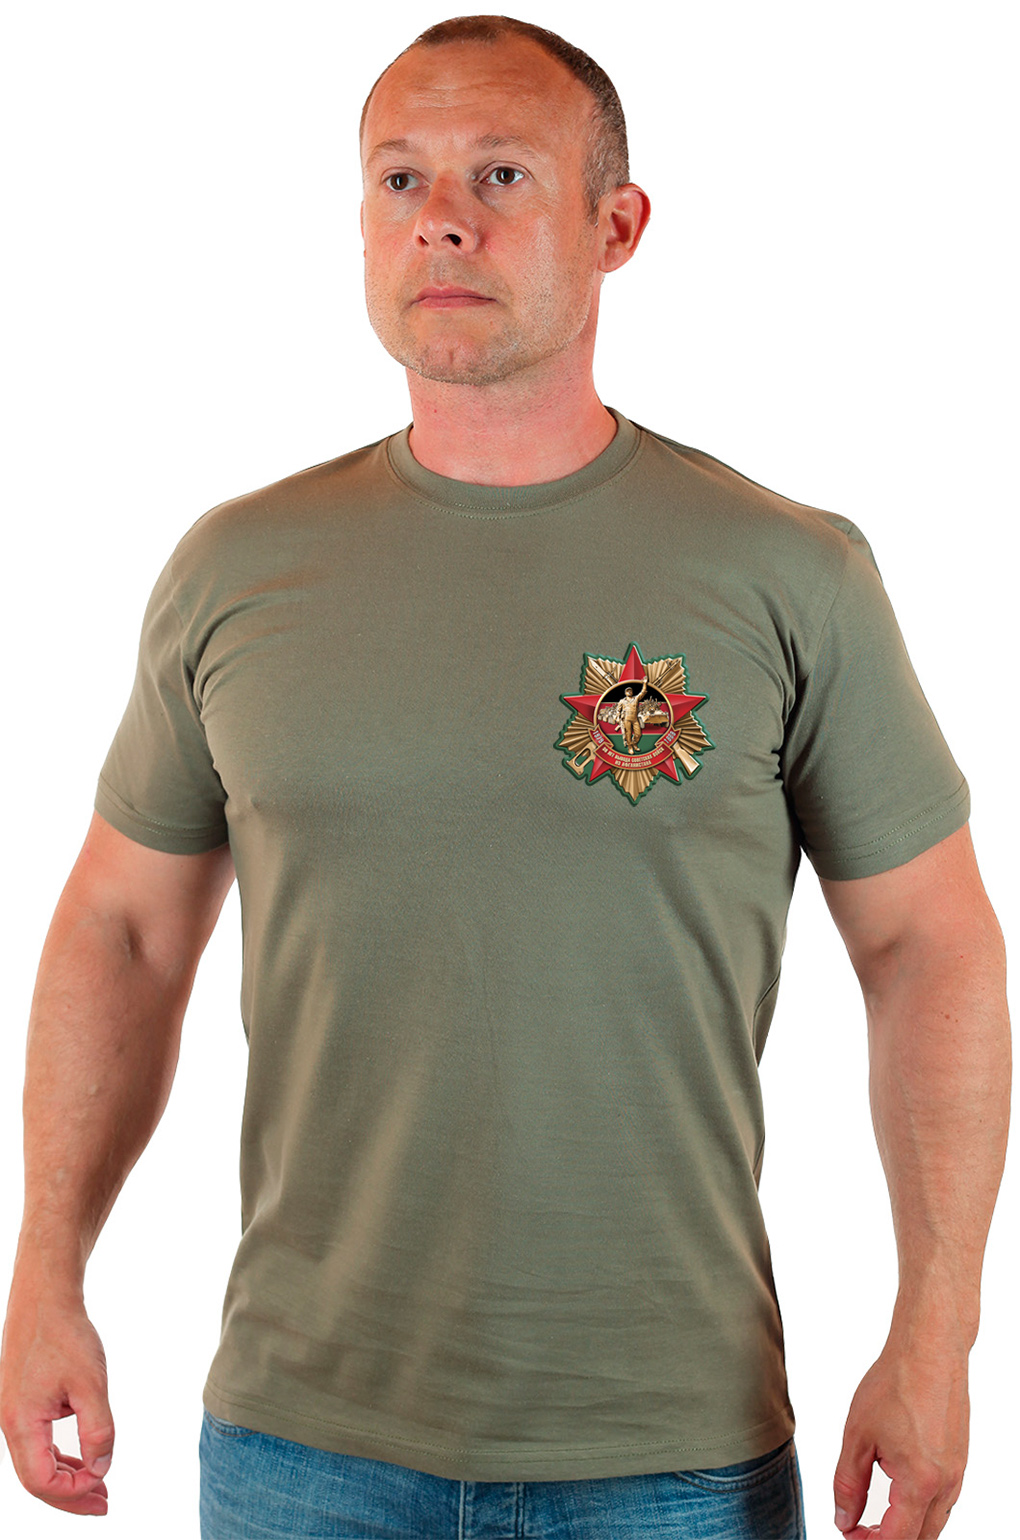 Подарочная мужская футболка к Юбилею вывода советских войск из Афганистана. 